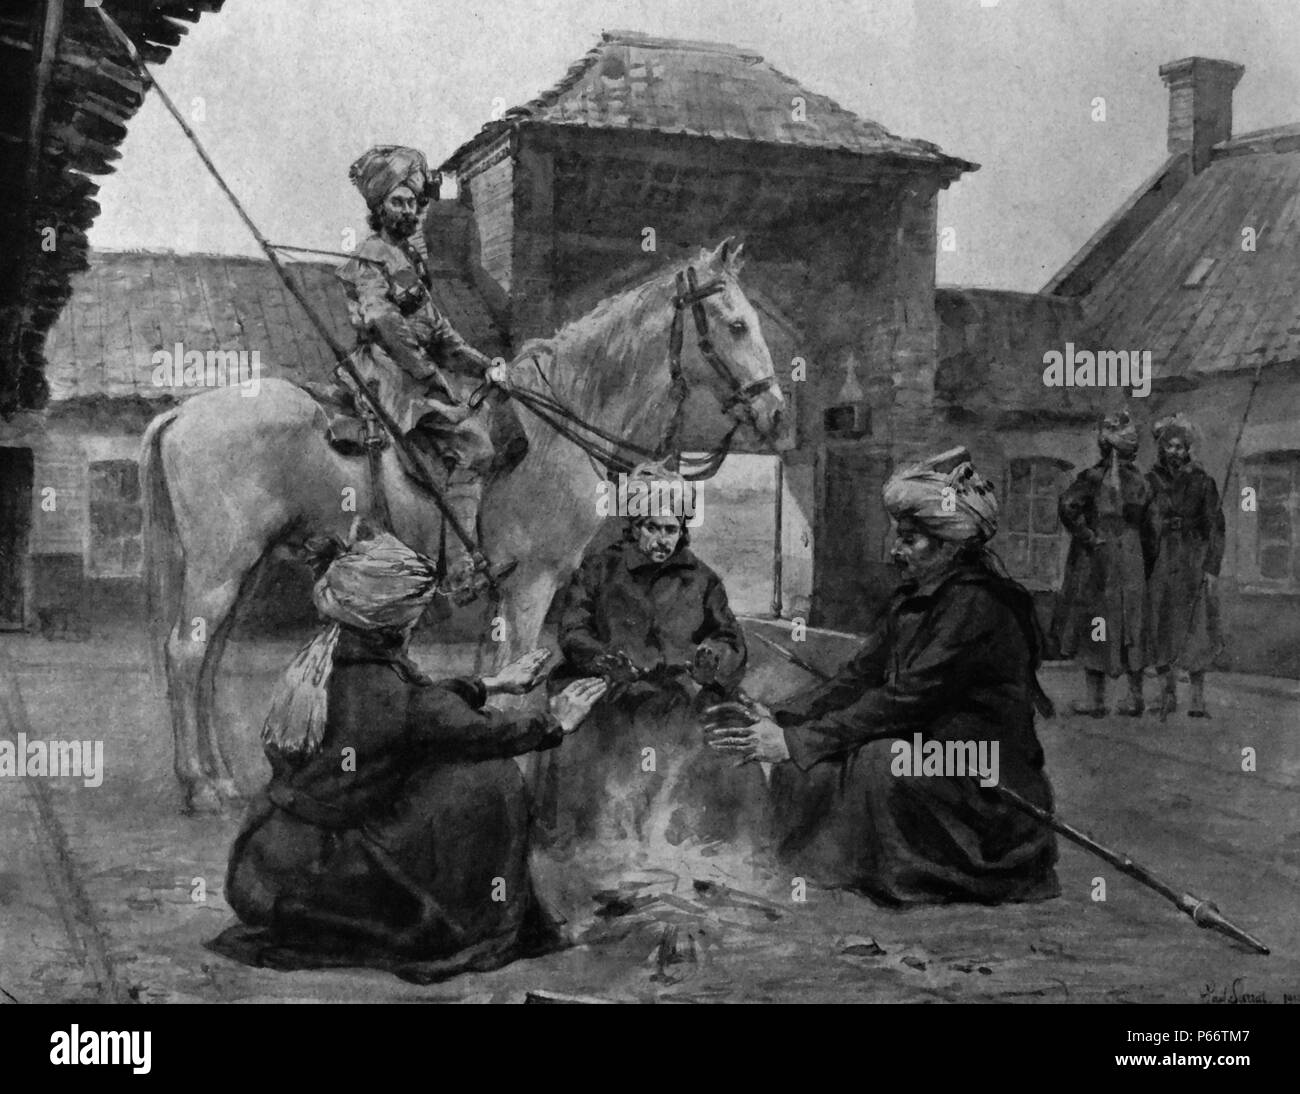 Lanciers indiens (Armée impériale de l'Inde), reste par un incendie dans une ferme dans le Nord de la France au cours de leur avance à la lutte armée. Novembre 1914 Banque D'Images